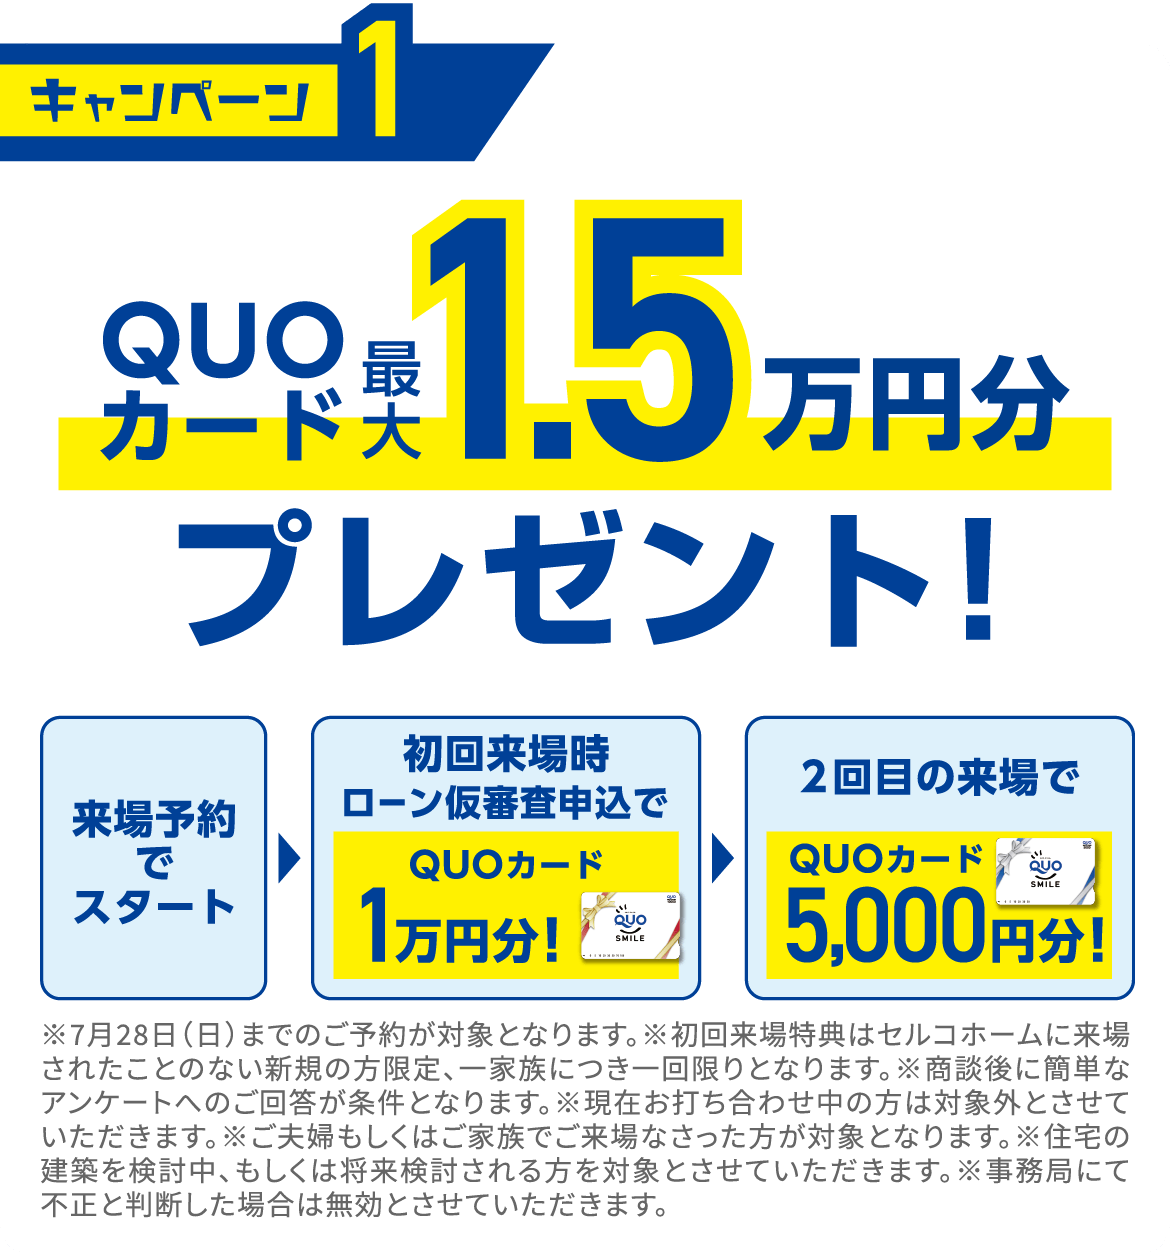 キャンペーン1
QUOカード最大1.5万円プレゼント！